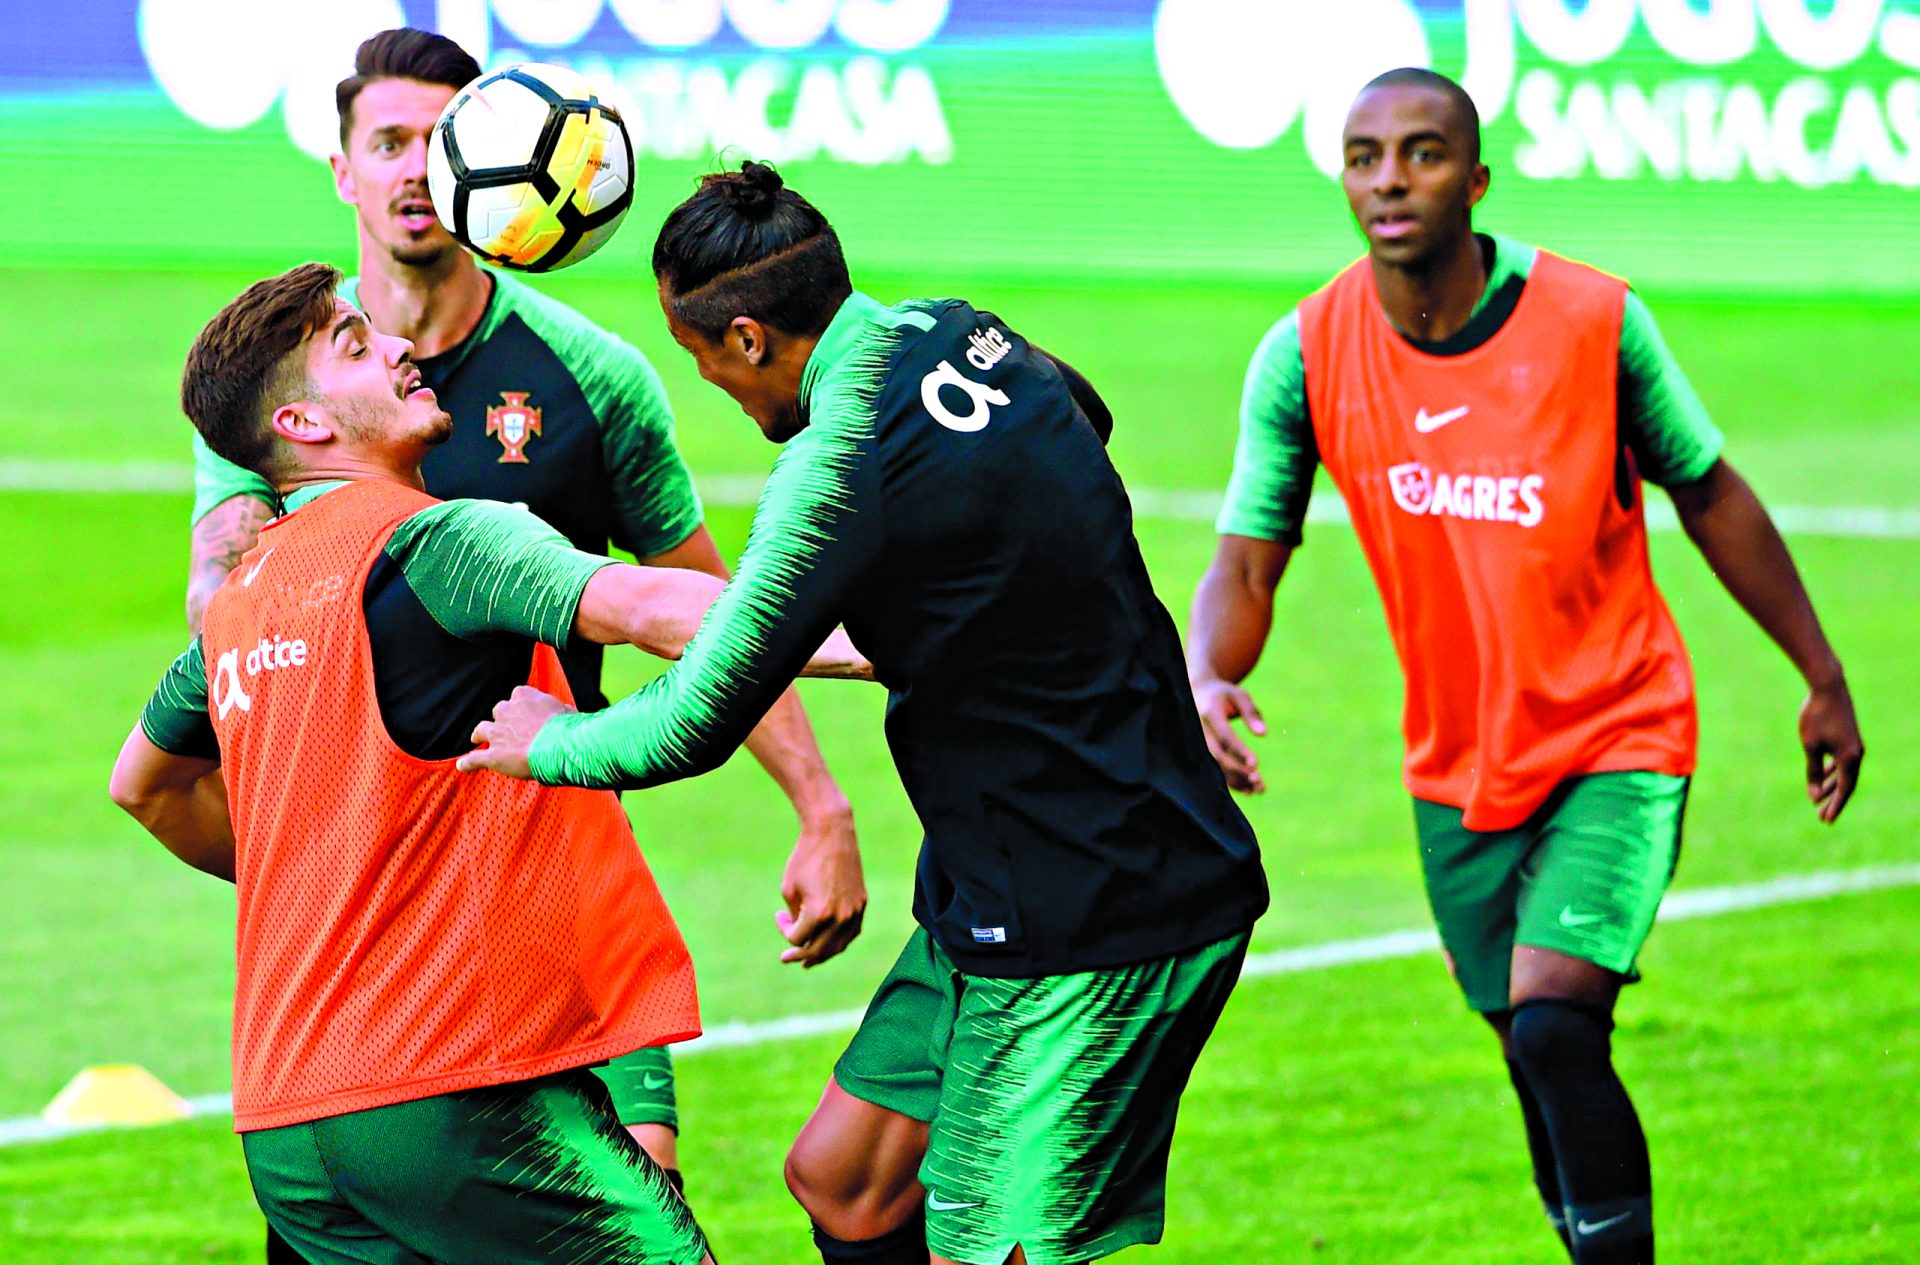 Seleção. Portugal começa hoje contagem decrescente para o Mundial2018